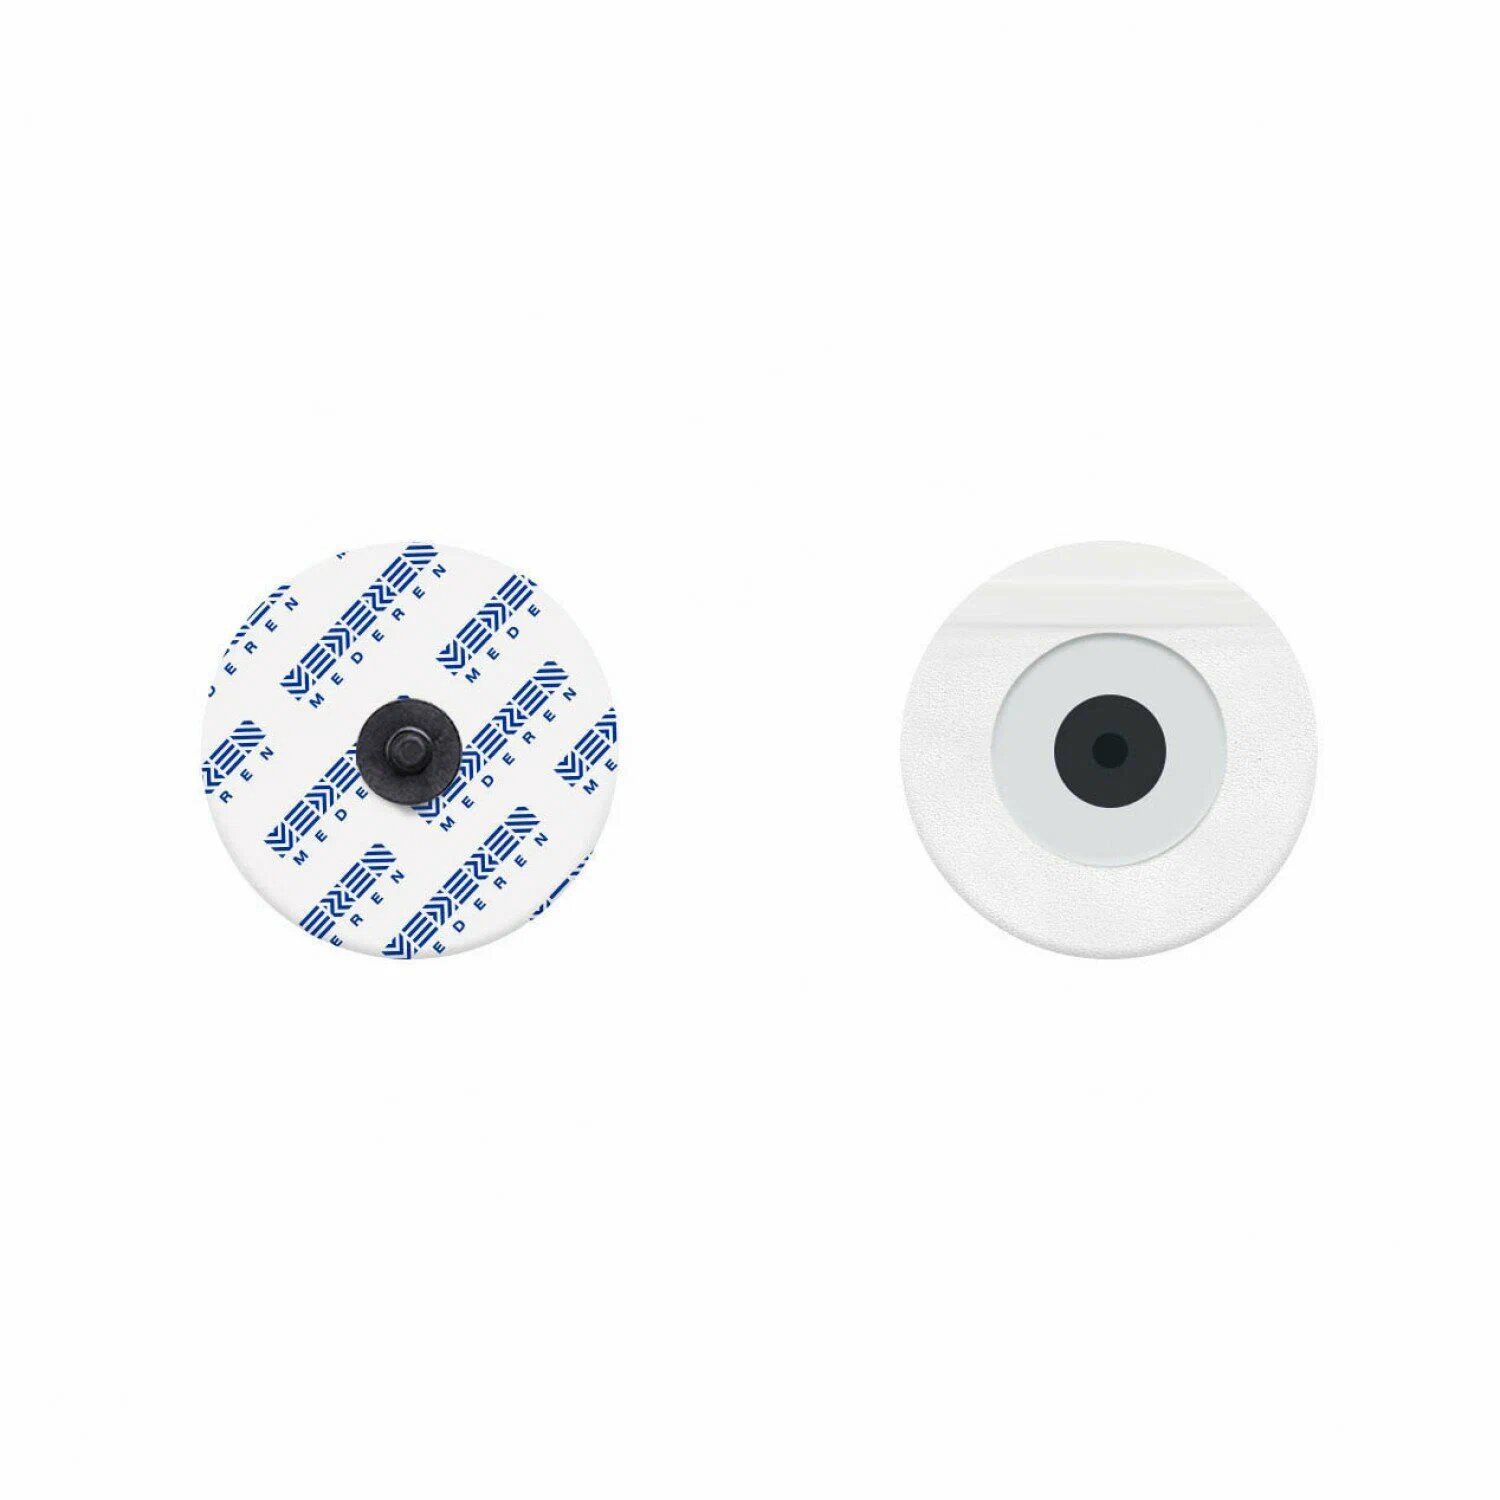 Электроды для ЭКГ на вспененной основе, одноразовый, круглый, диаметр 50 мм, жидкий гель Медерен Неотех Лтд. (50 шт/уп)